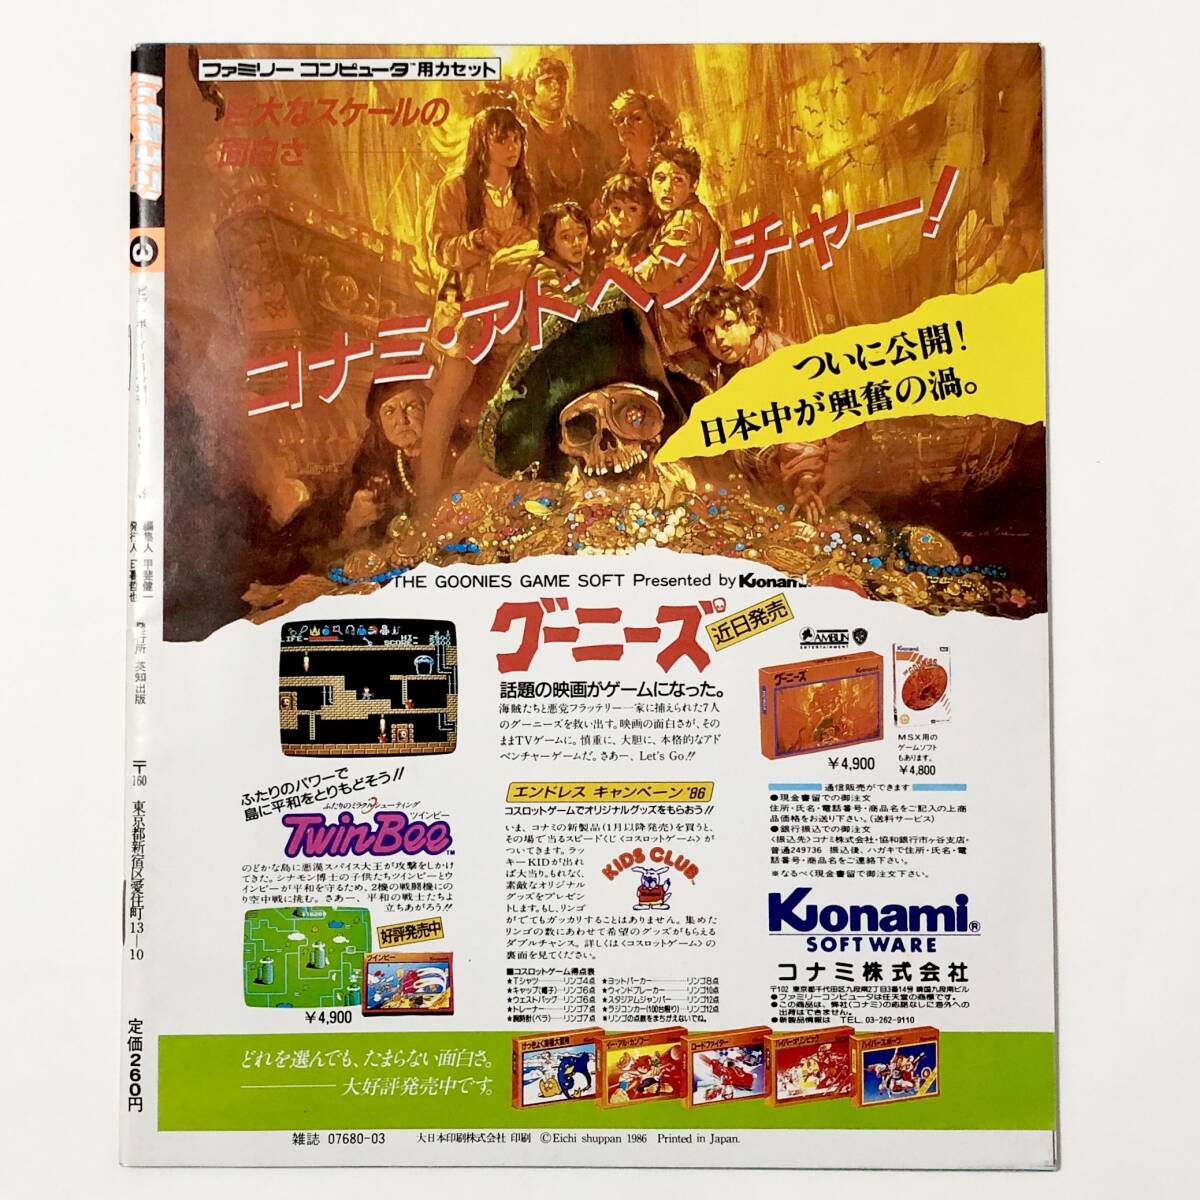 中古雑誌 ビデオボーイ3月号増刊 ゲーム情報誌 ハイスコア デビュー号 グーニーズ特集 / Famicom Hi-SCORE Magazine 1986年3月 昭和 レトロ_画像2